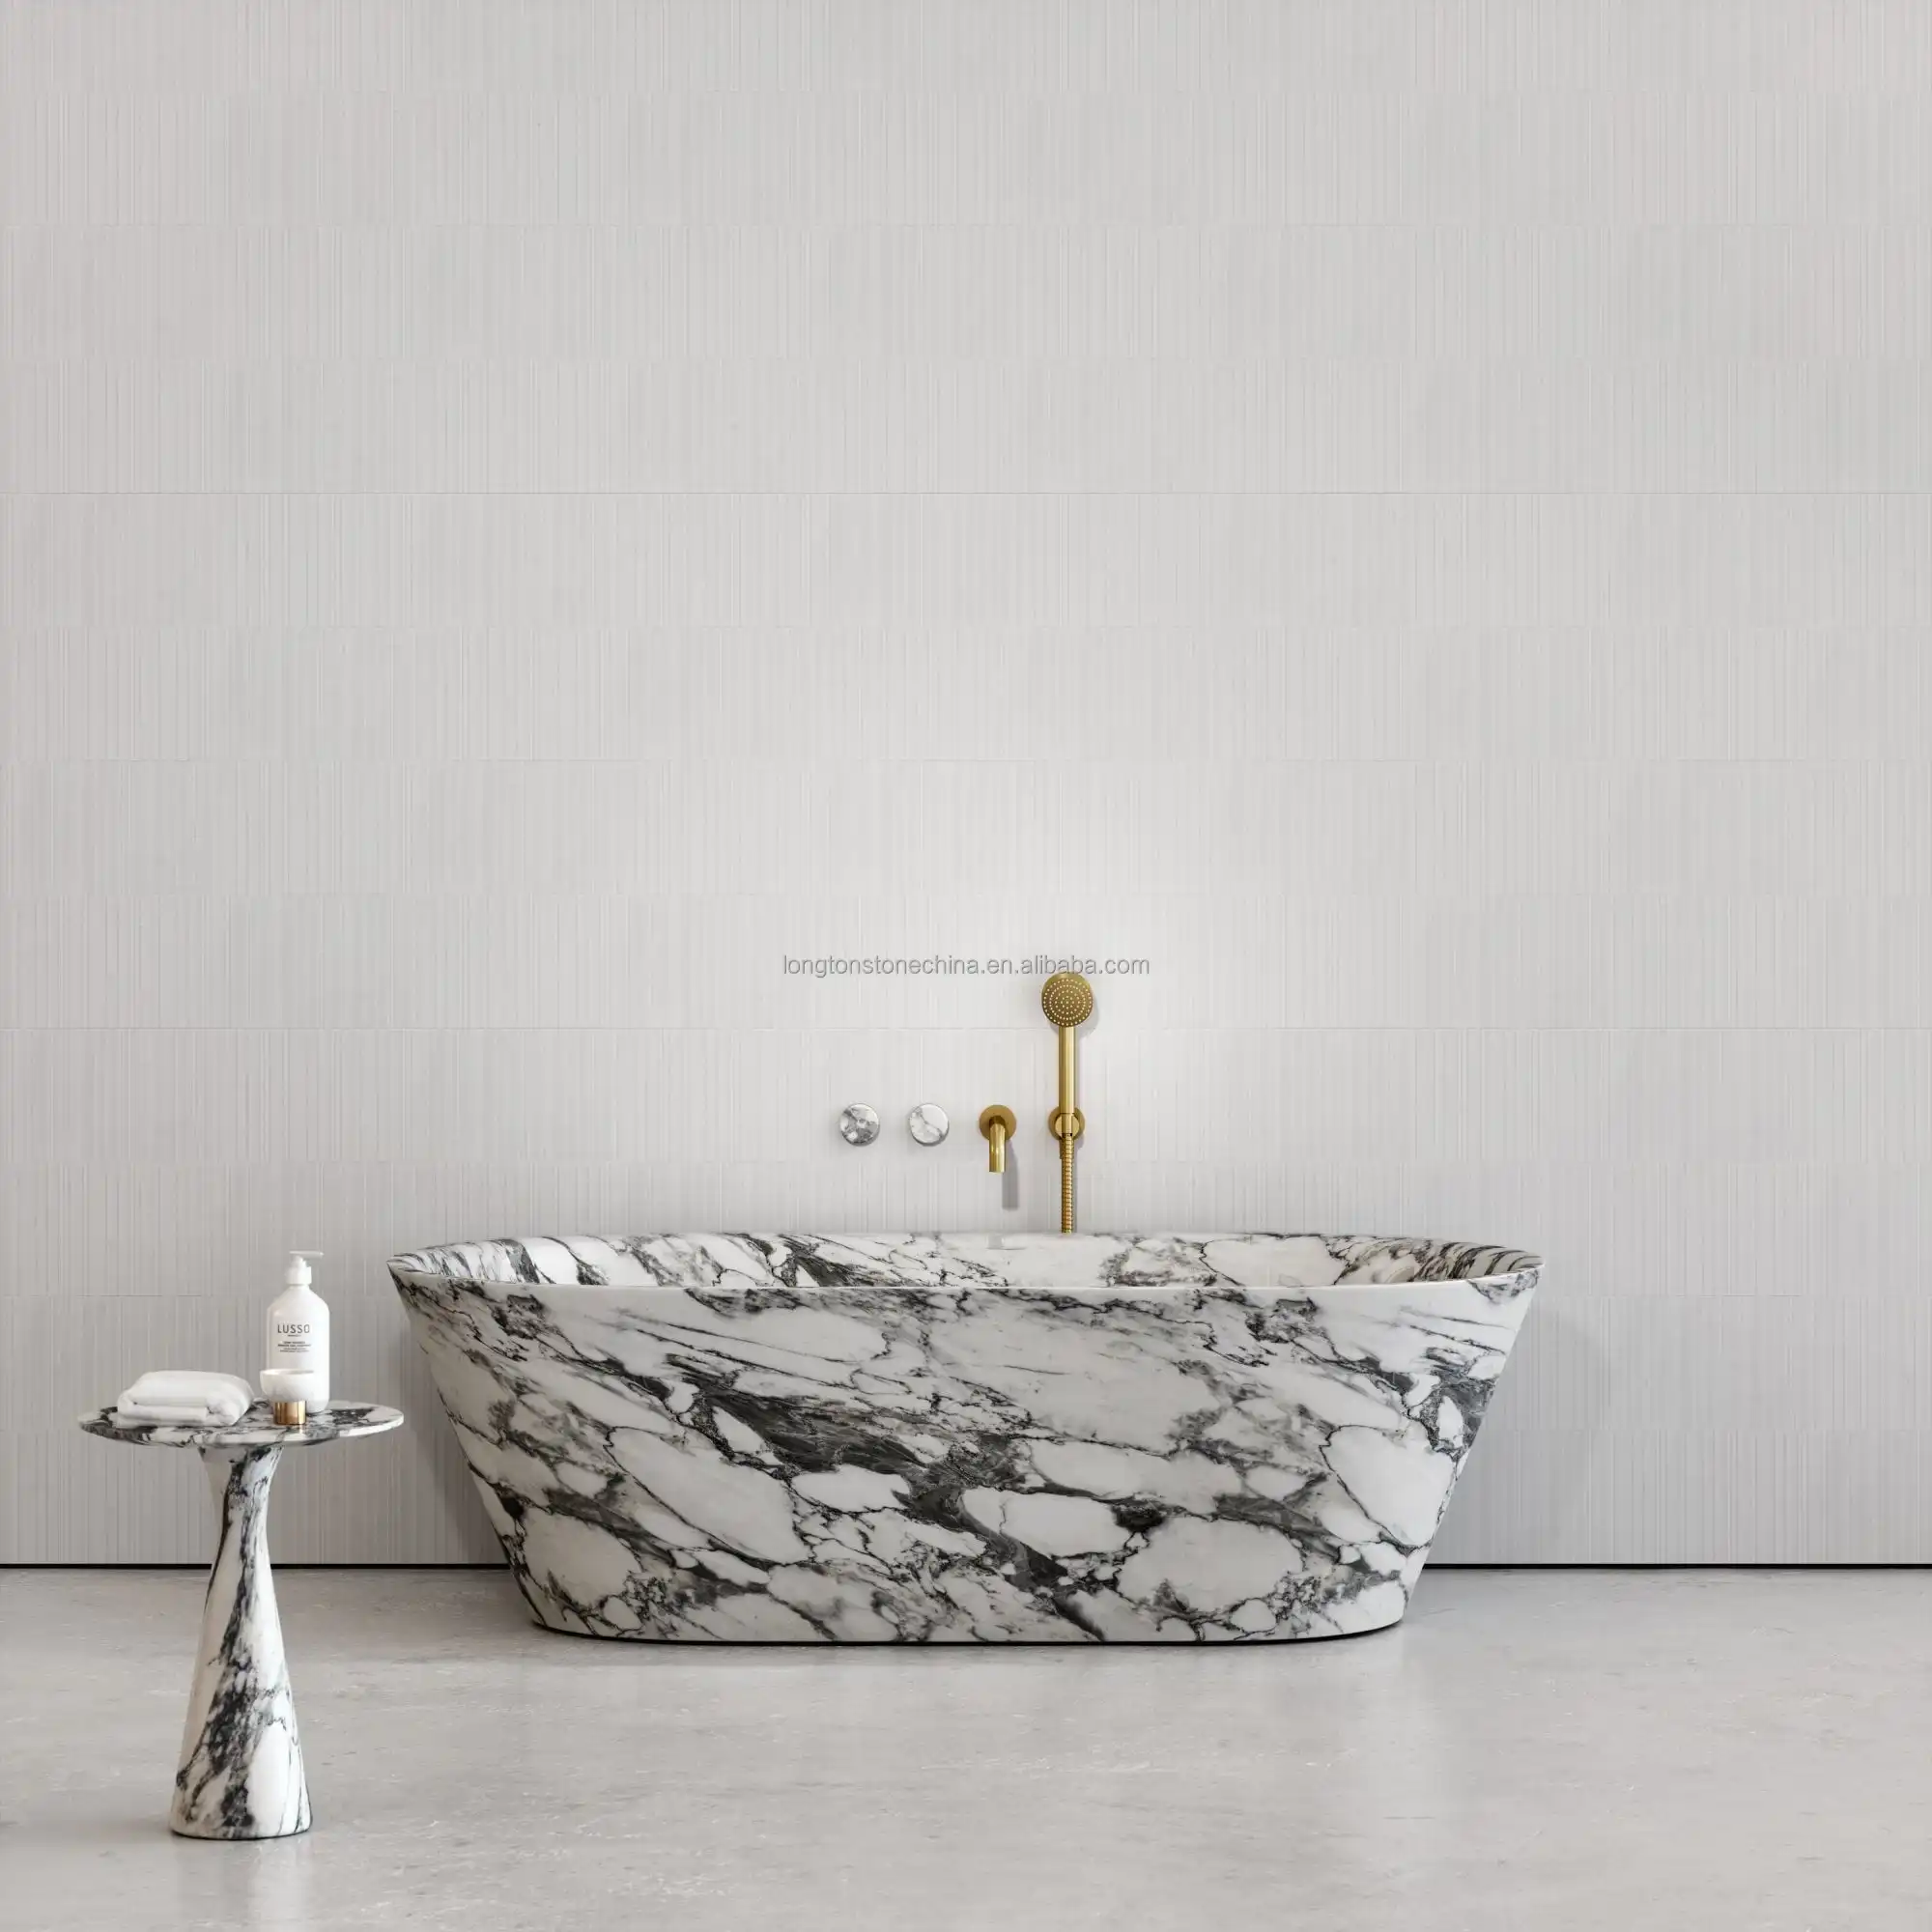 Luxus-Badewanne aus Arabescato Corchia Marmor Naturstein-Badezimmerdekor Badewannen für Badezimmer weiße Badewanne